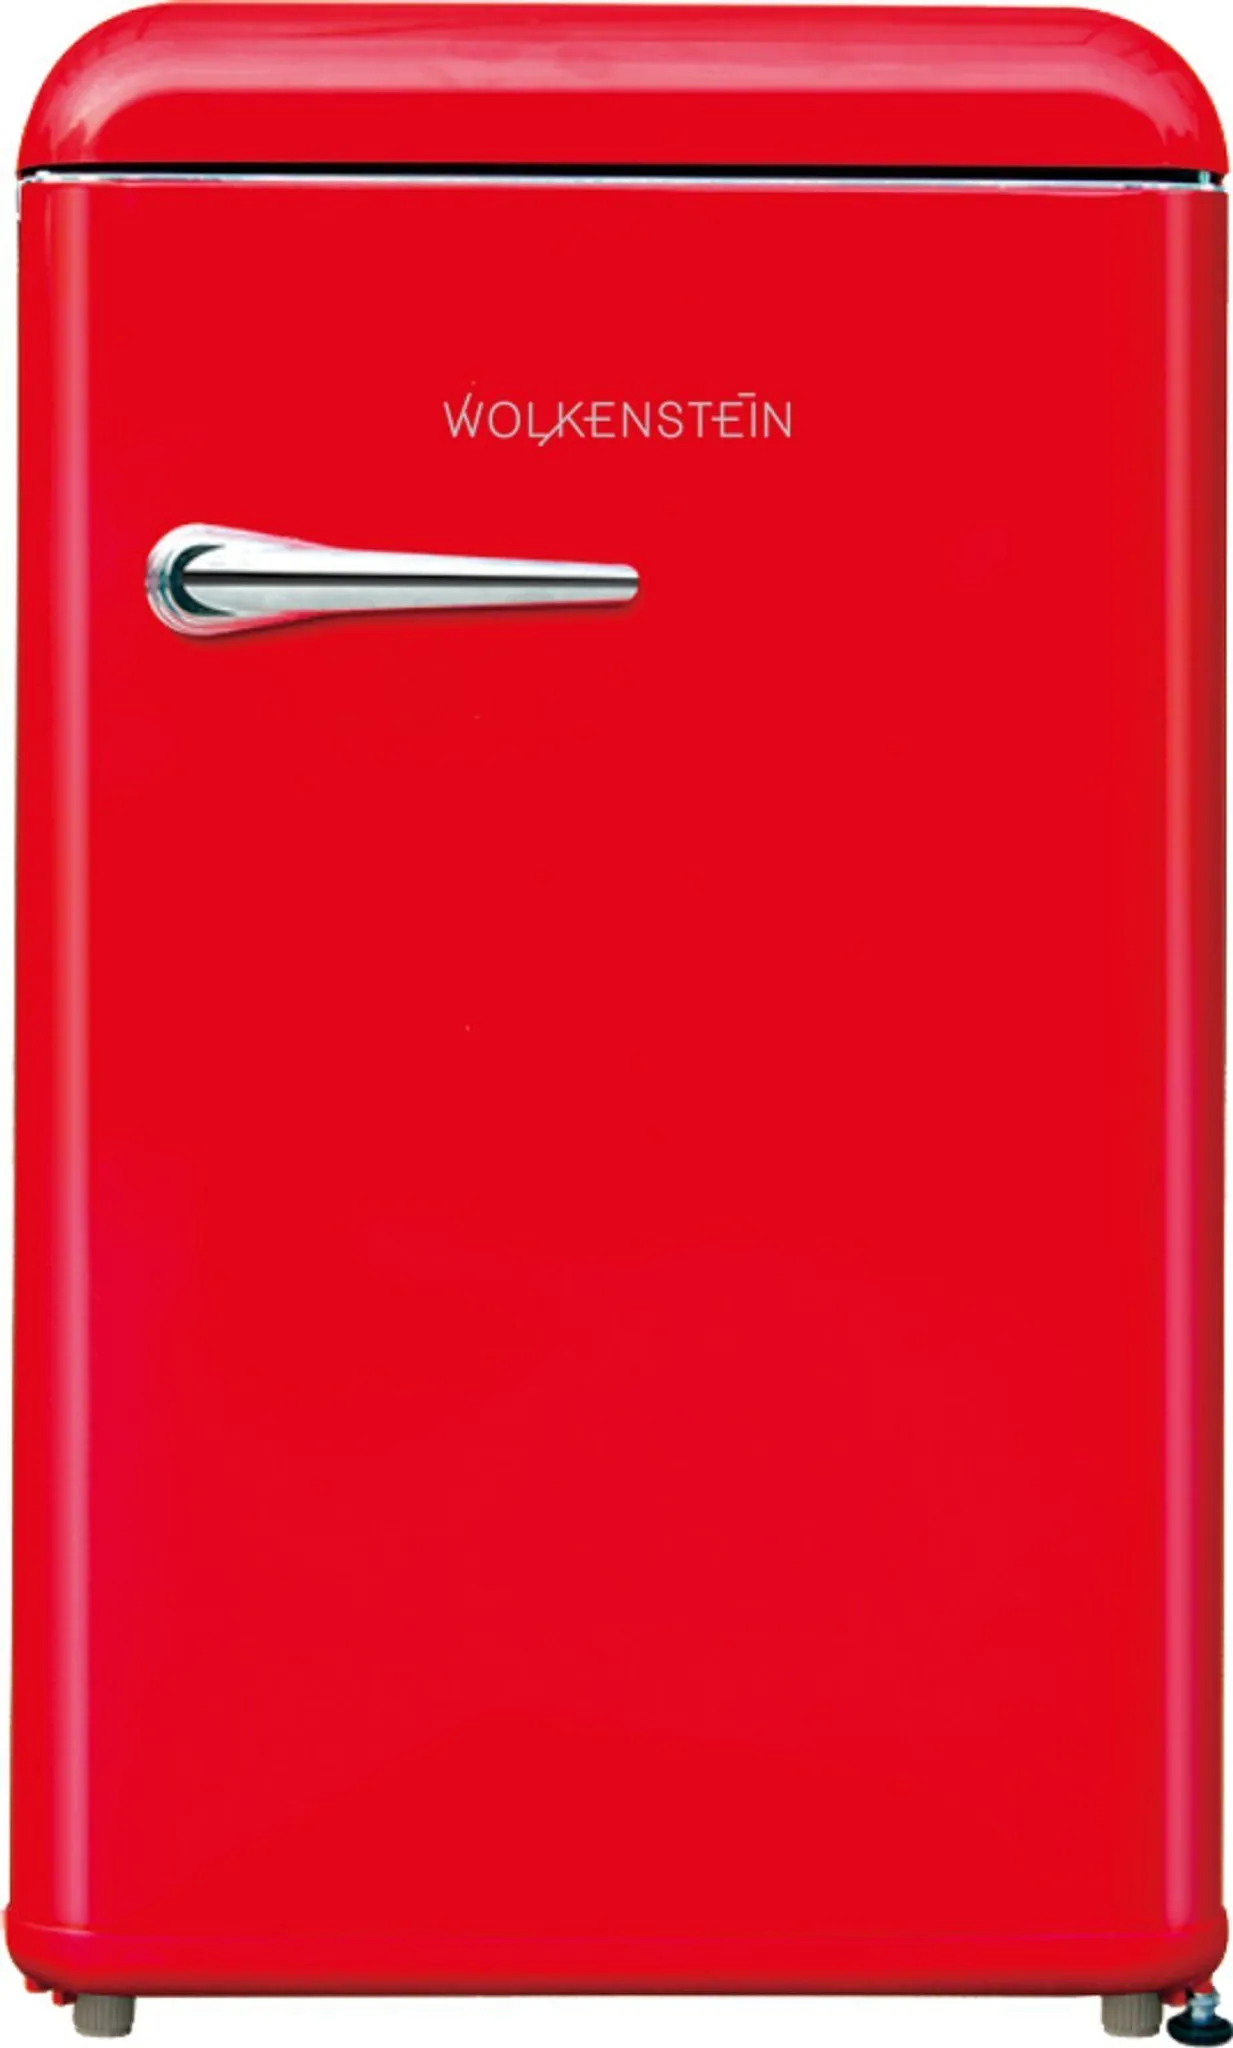 WOLKENSTEIN WKS125RT FR / Retro - Kühlschrank